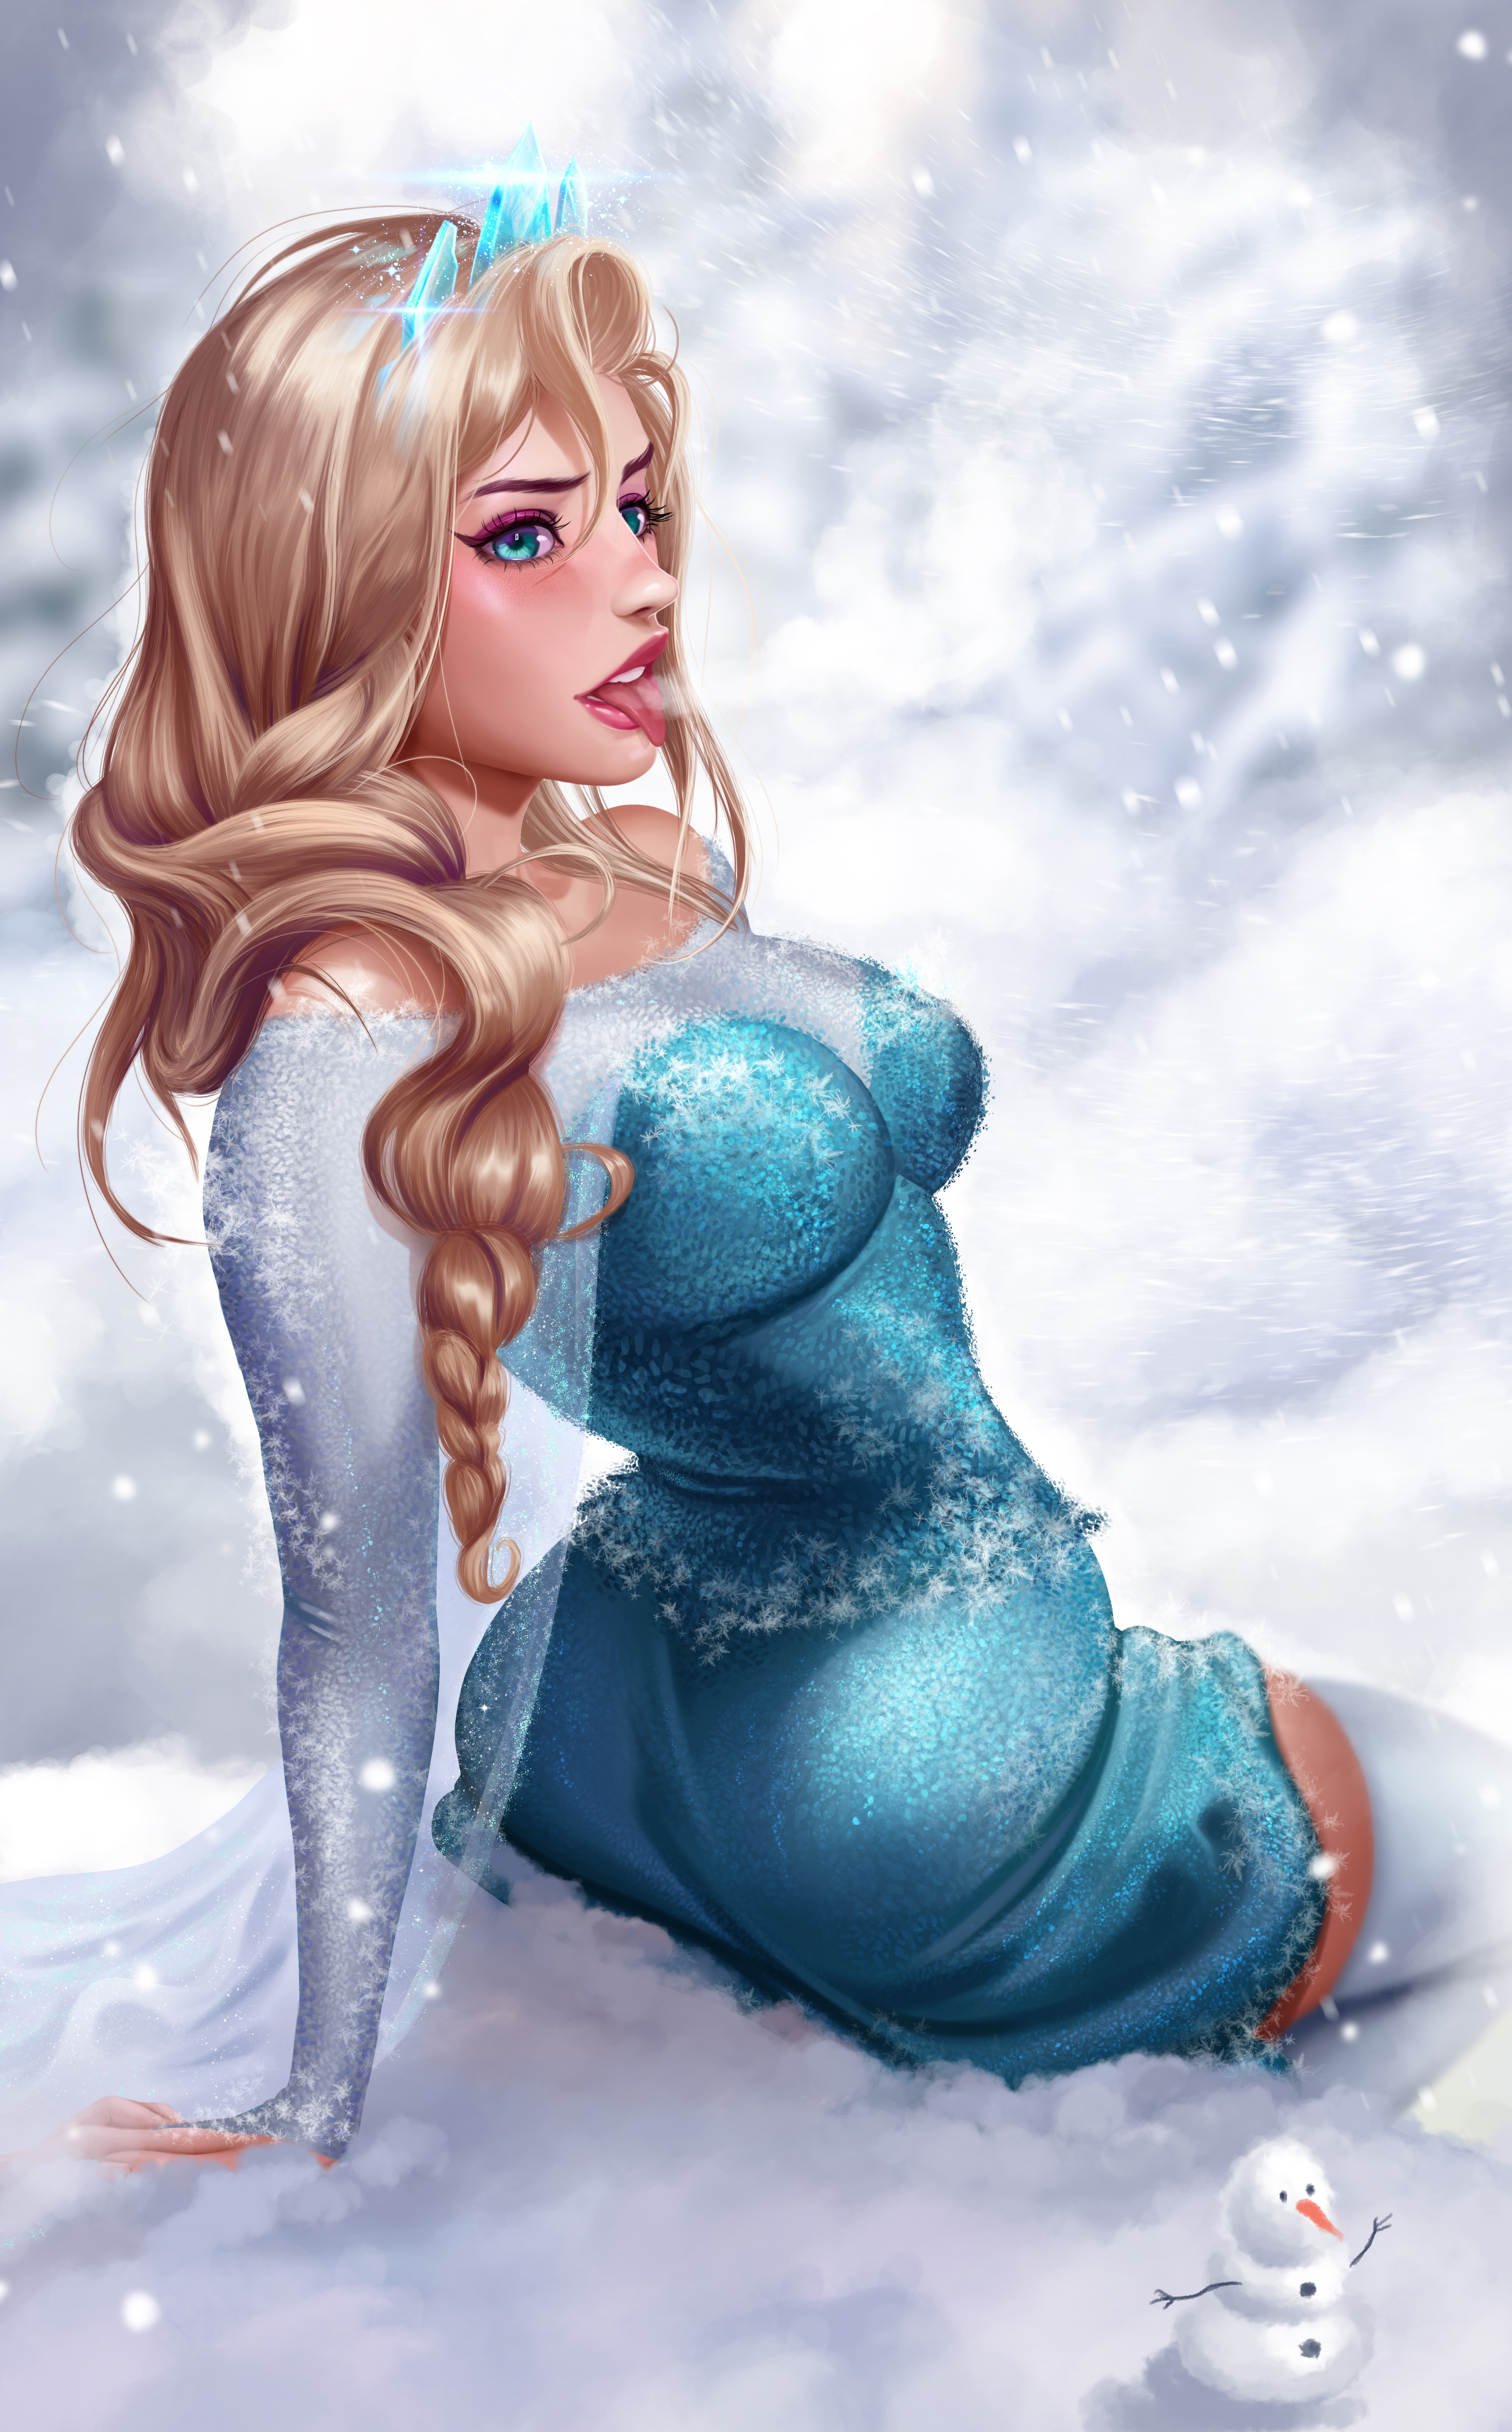 Princess Elsa Frozen Movie Disney Princesses Blonde Snowing Snow Dress Tongue Out Blue Eyes Crown 2D 3731x6000